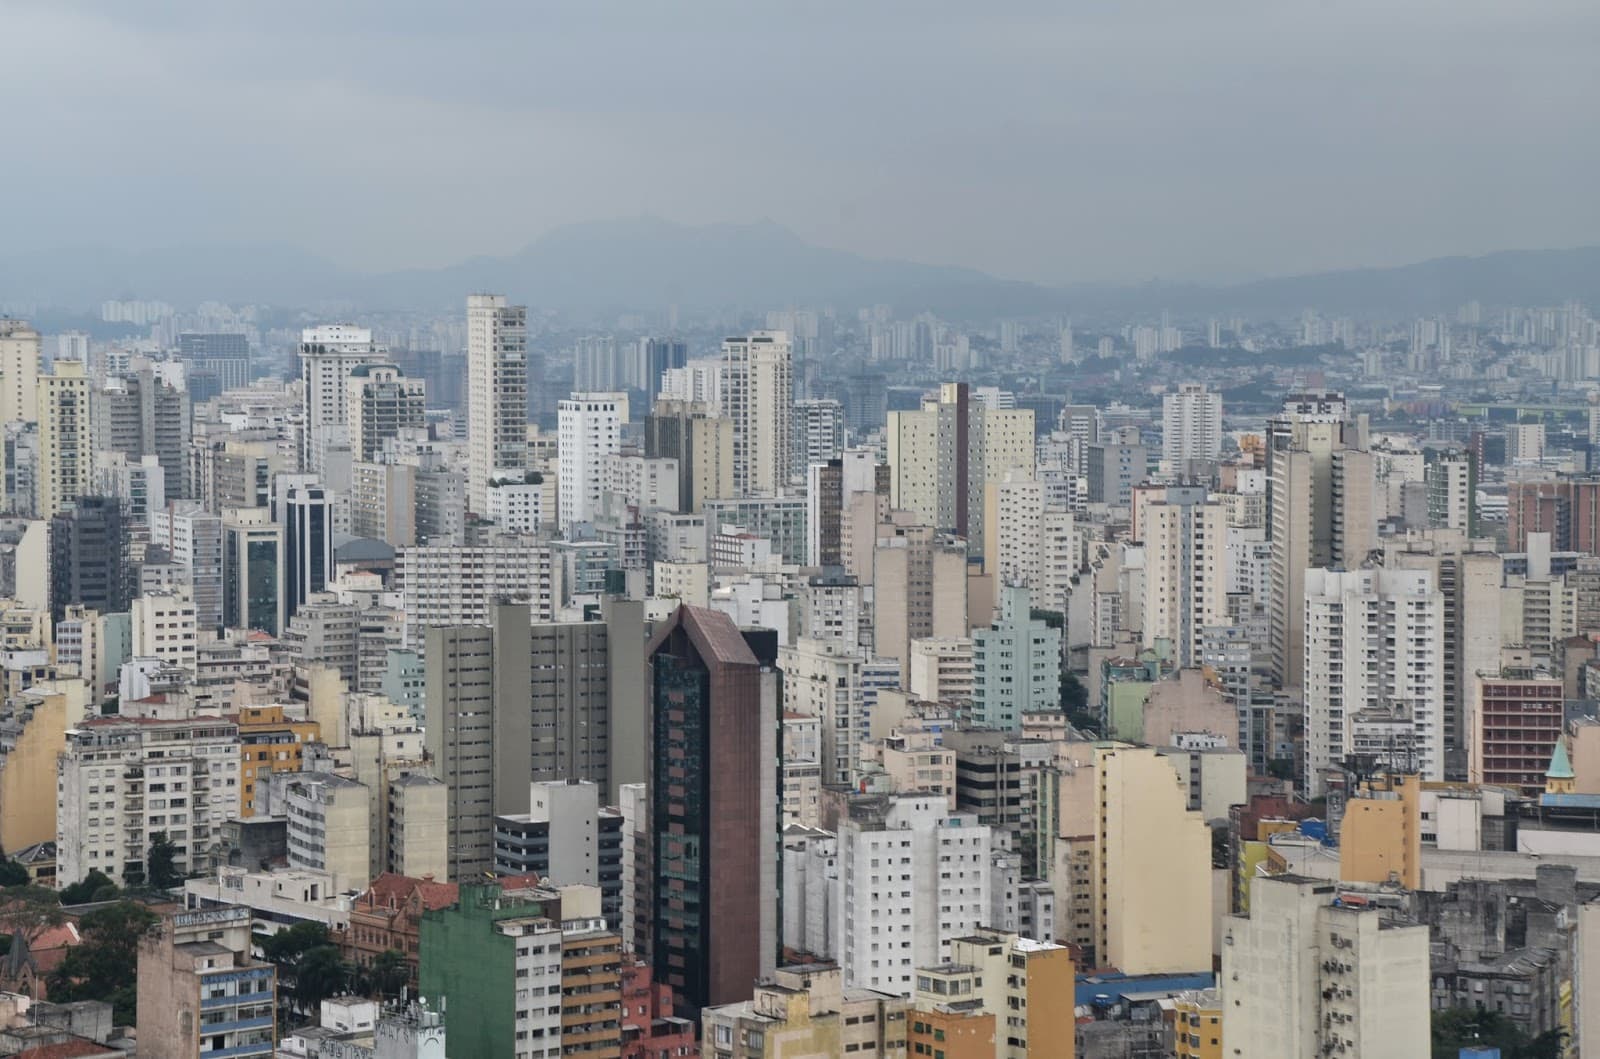 São Paulo from Edifício Itália, Brazil